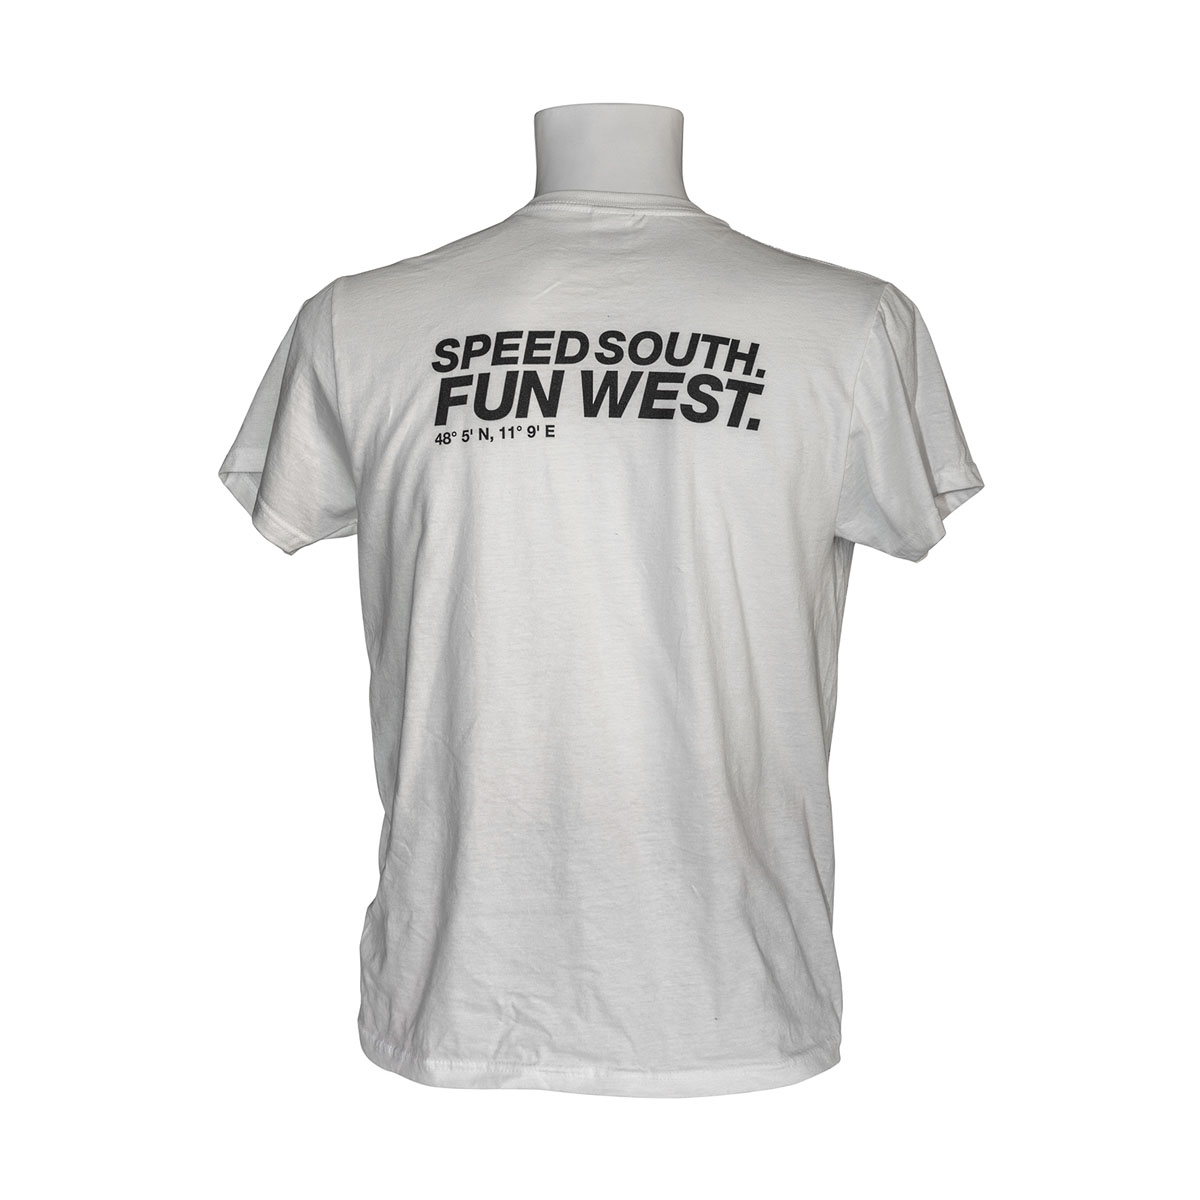 TOPCAT T-Shirt Speed south,fun west weiß S (TC1760)